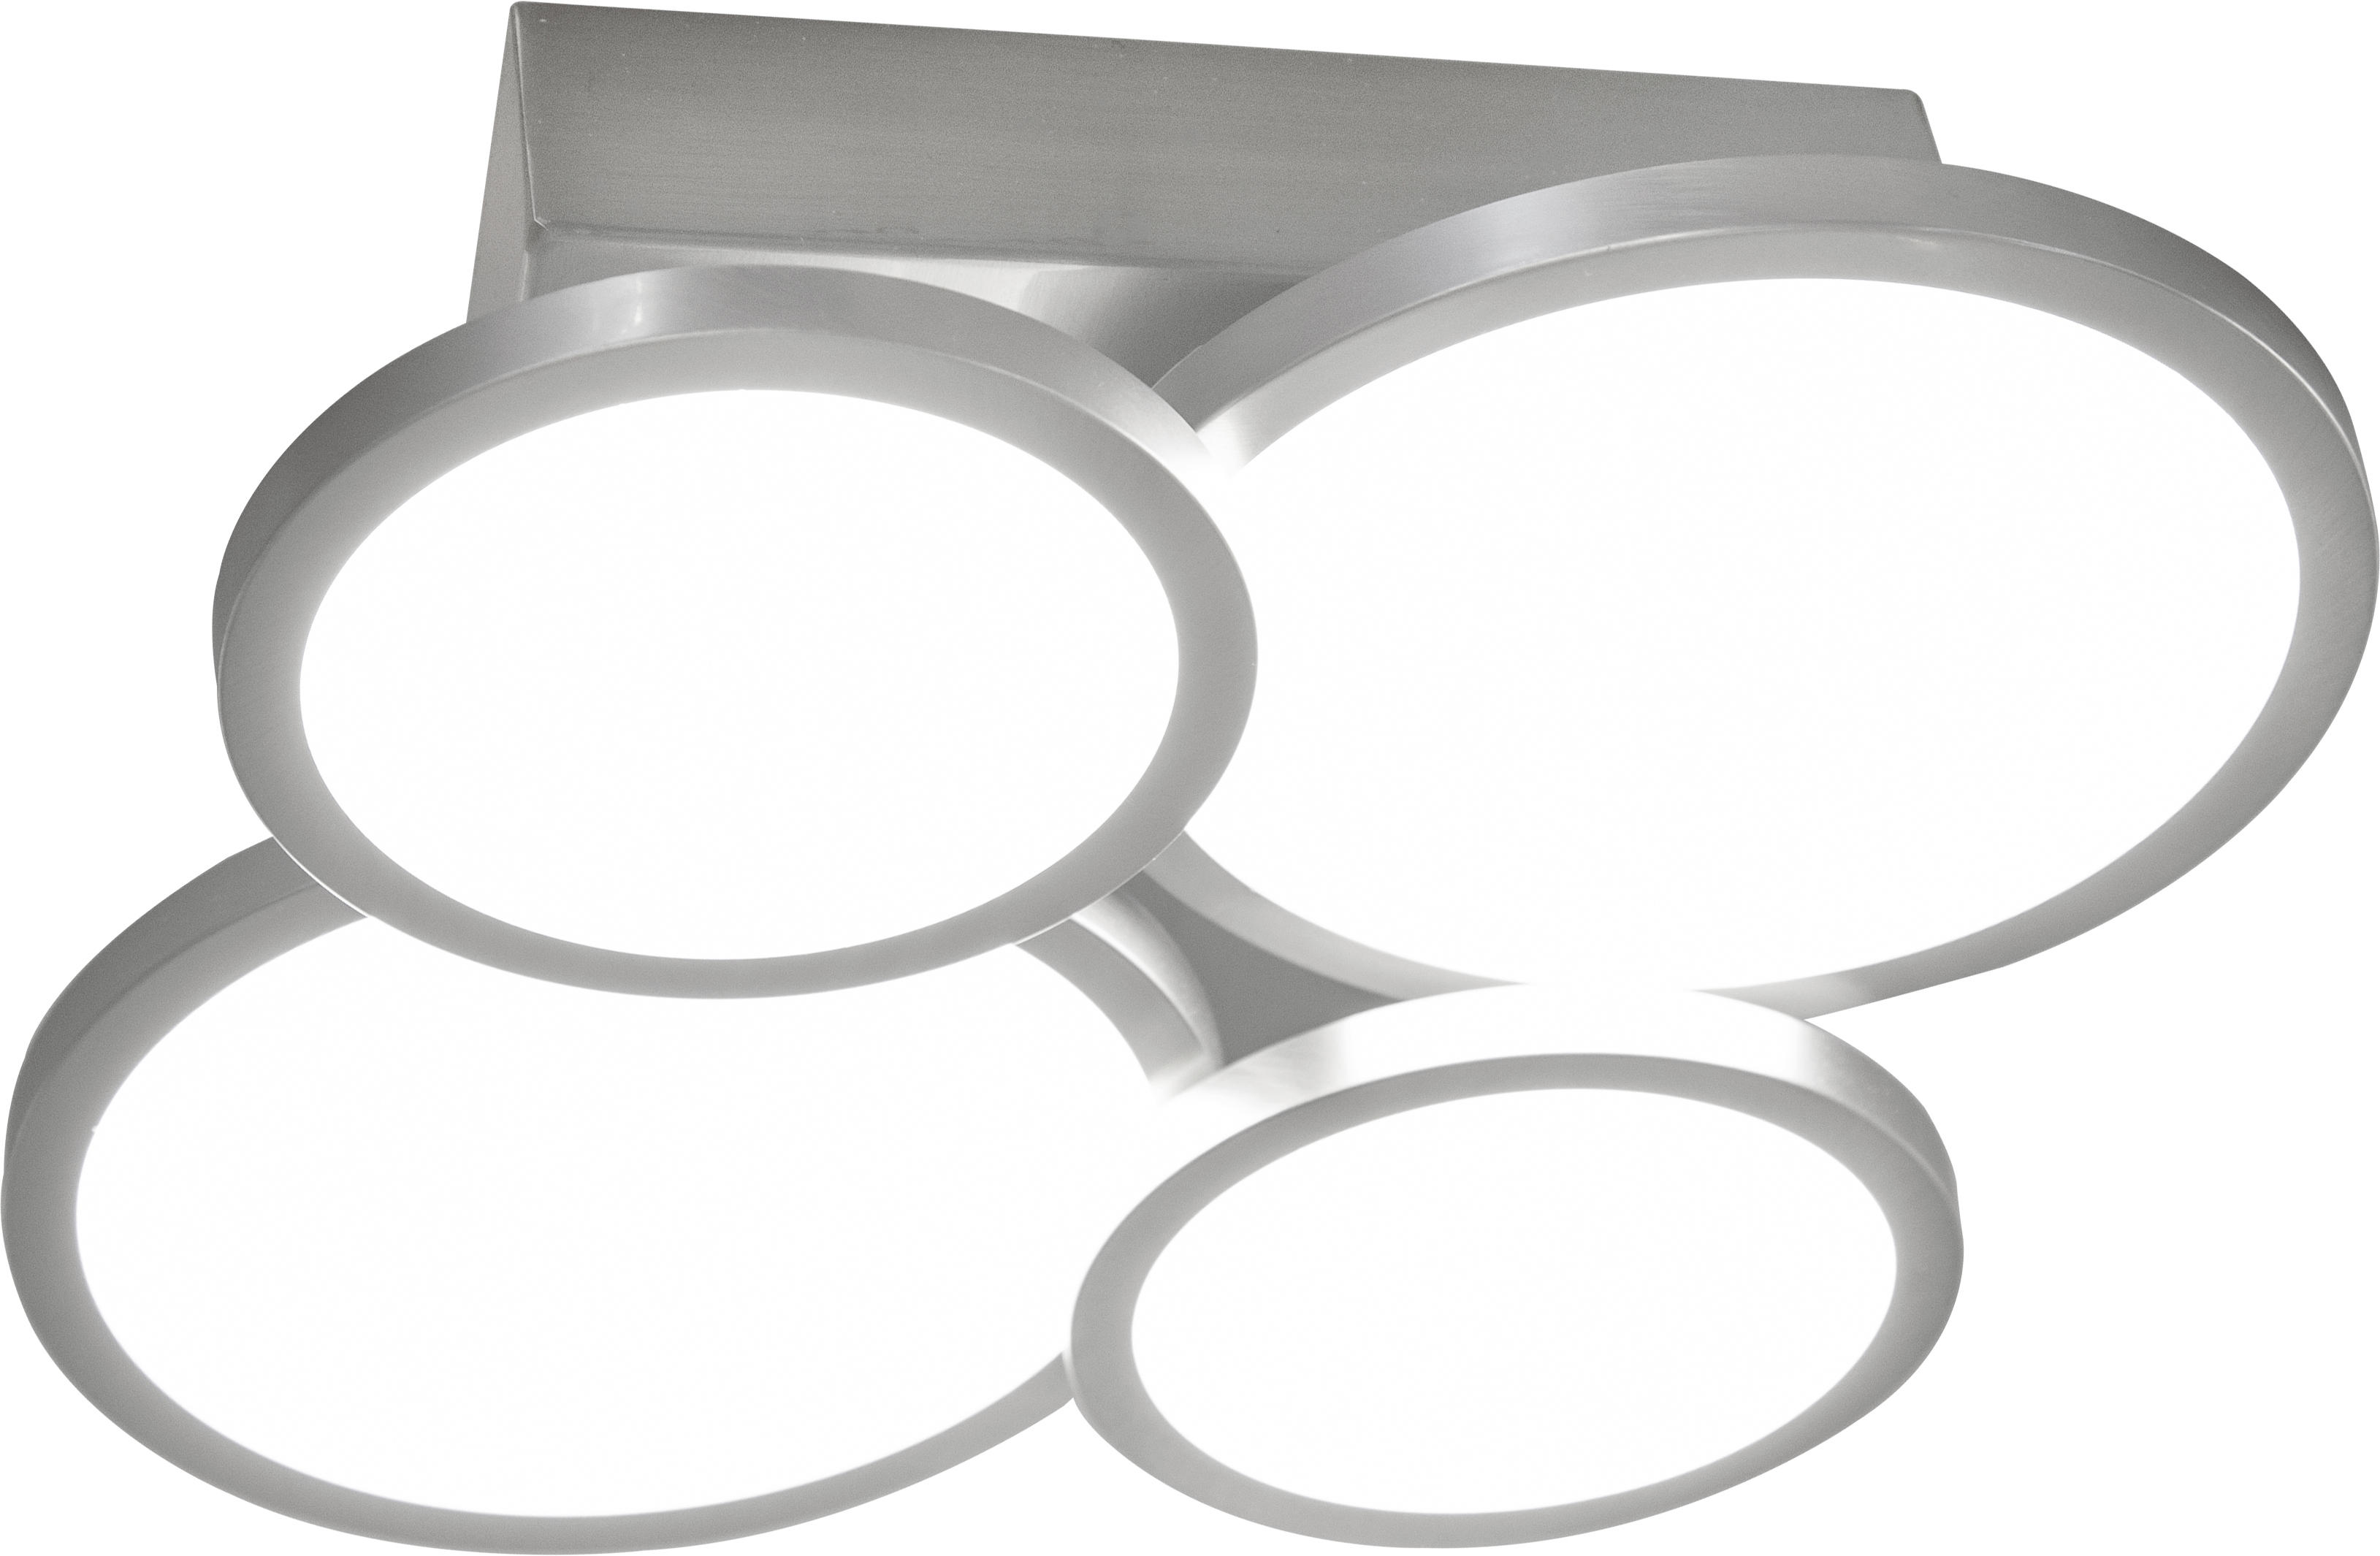 LED-DECKENLEUCHTE Neo  - Silberfarben/Weiß, Design, Kunststoff/Metall (25/25,8/7,4cm)